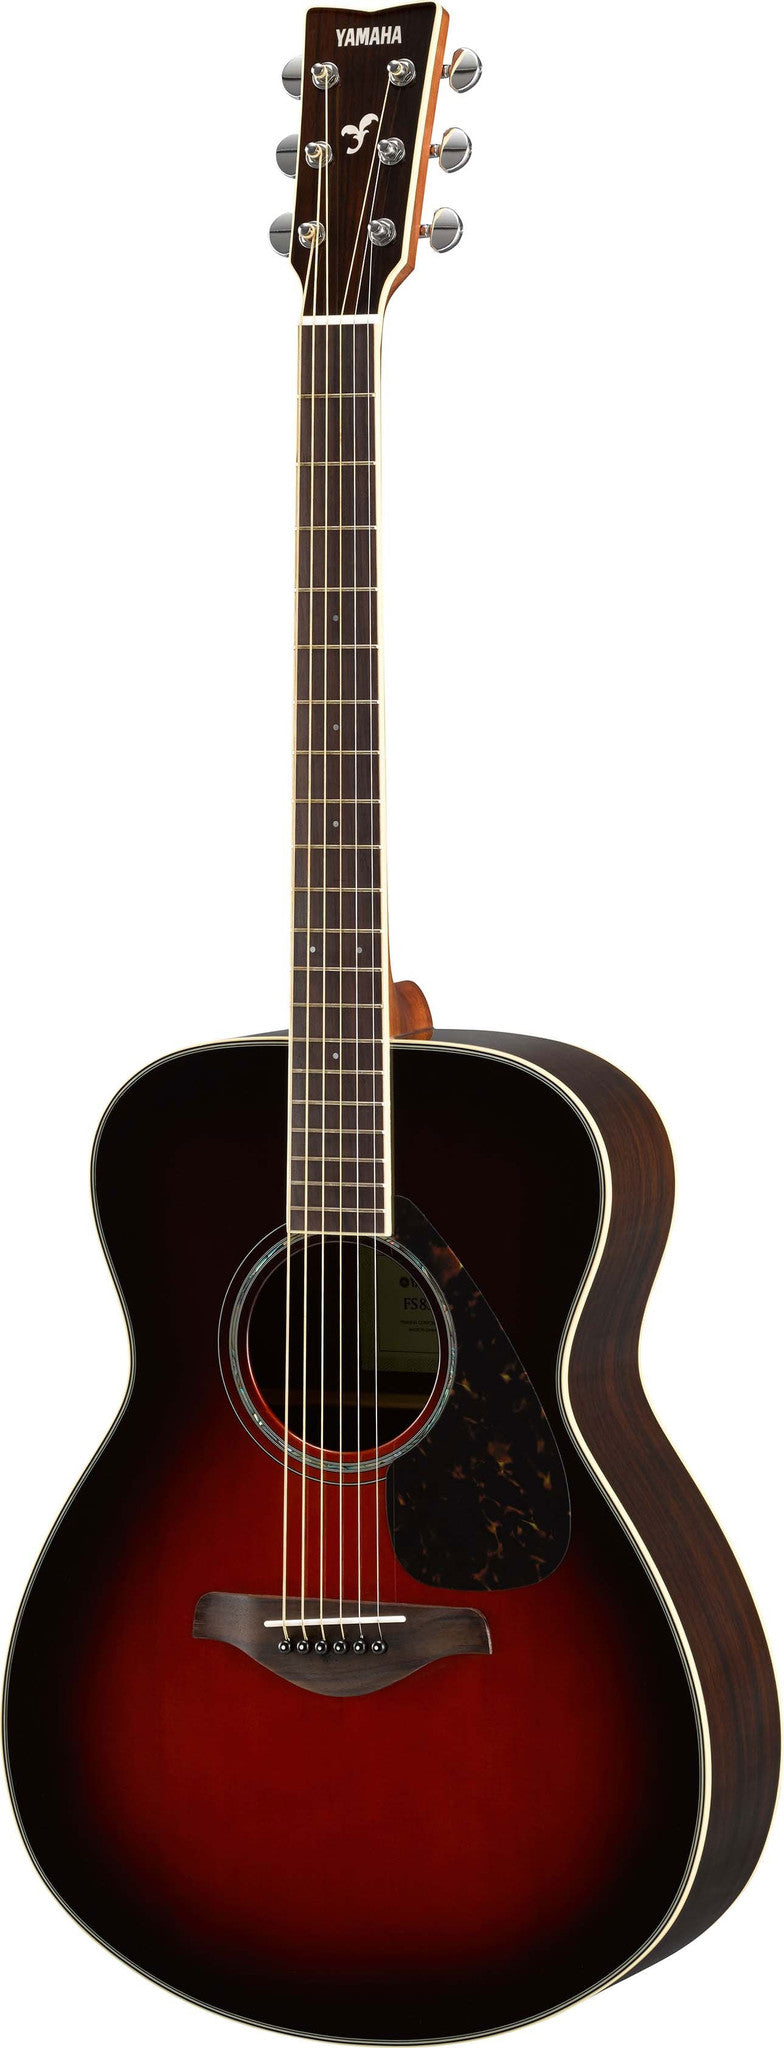 Yamaha FS830TBS Small Body Acoustic Guitar